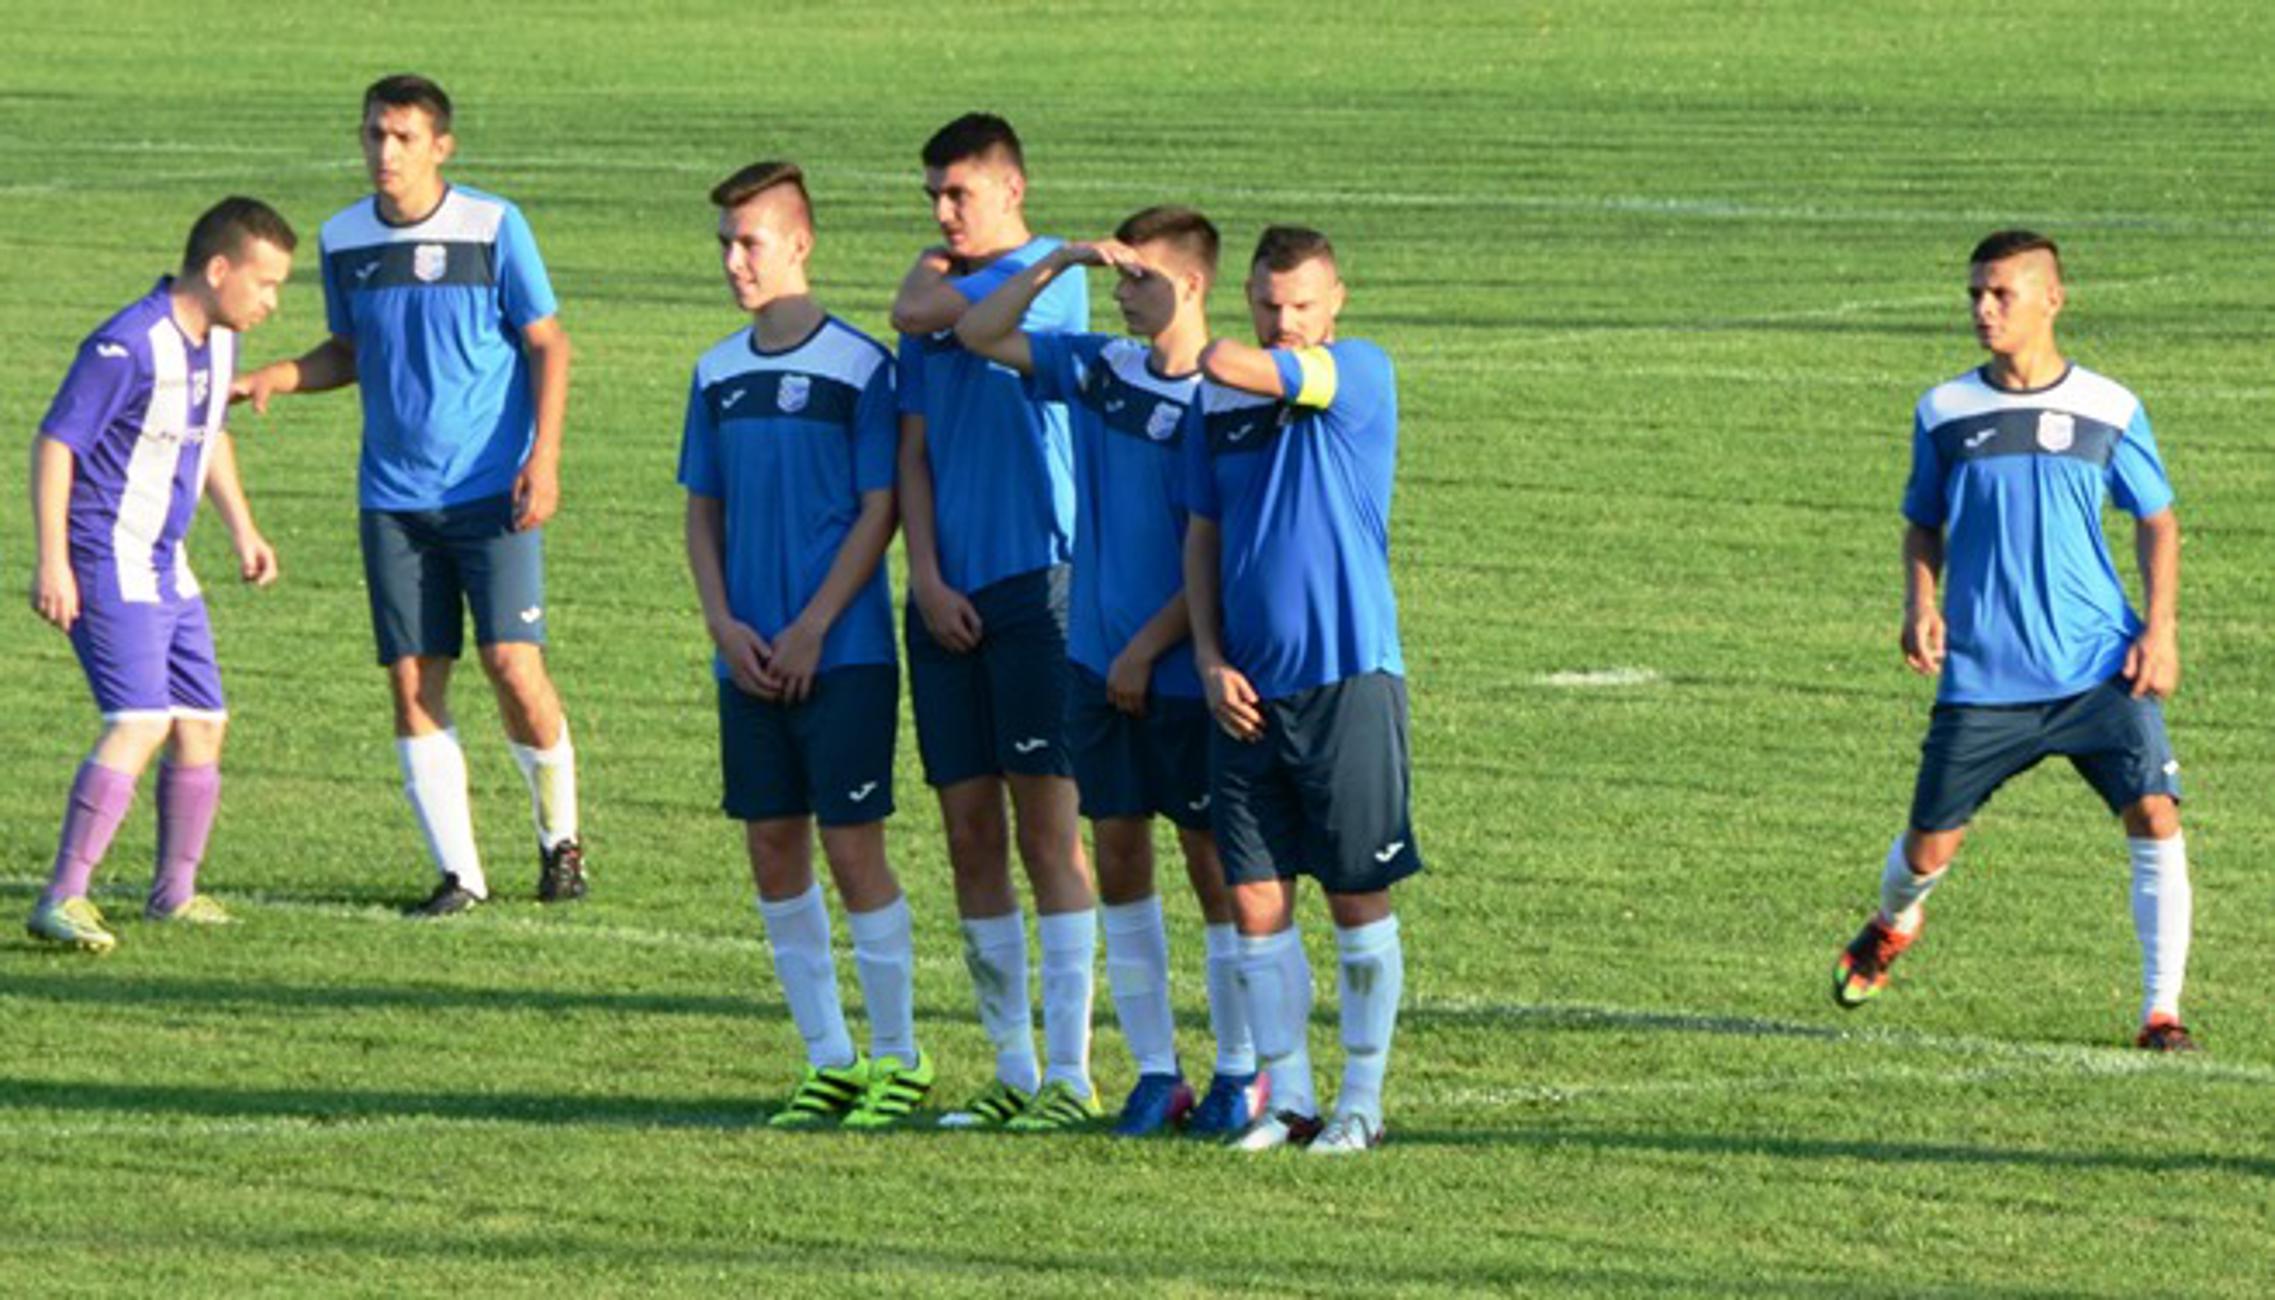 Amater je na domaćem travnjaku odigrao nerješeno s Bukovljanima.